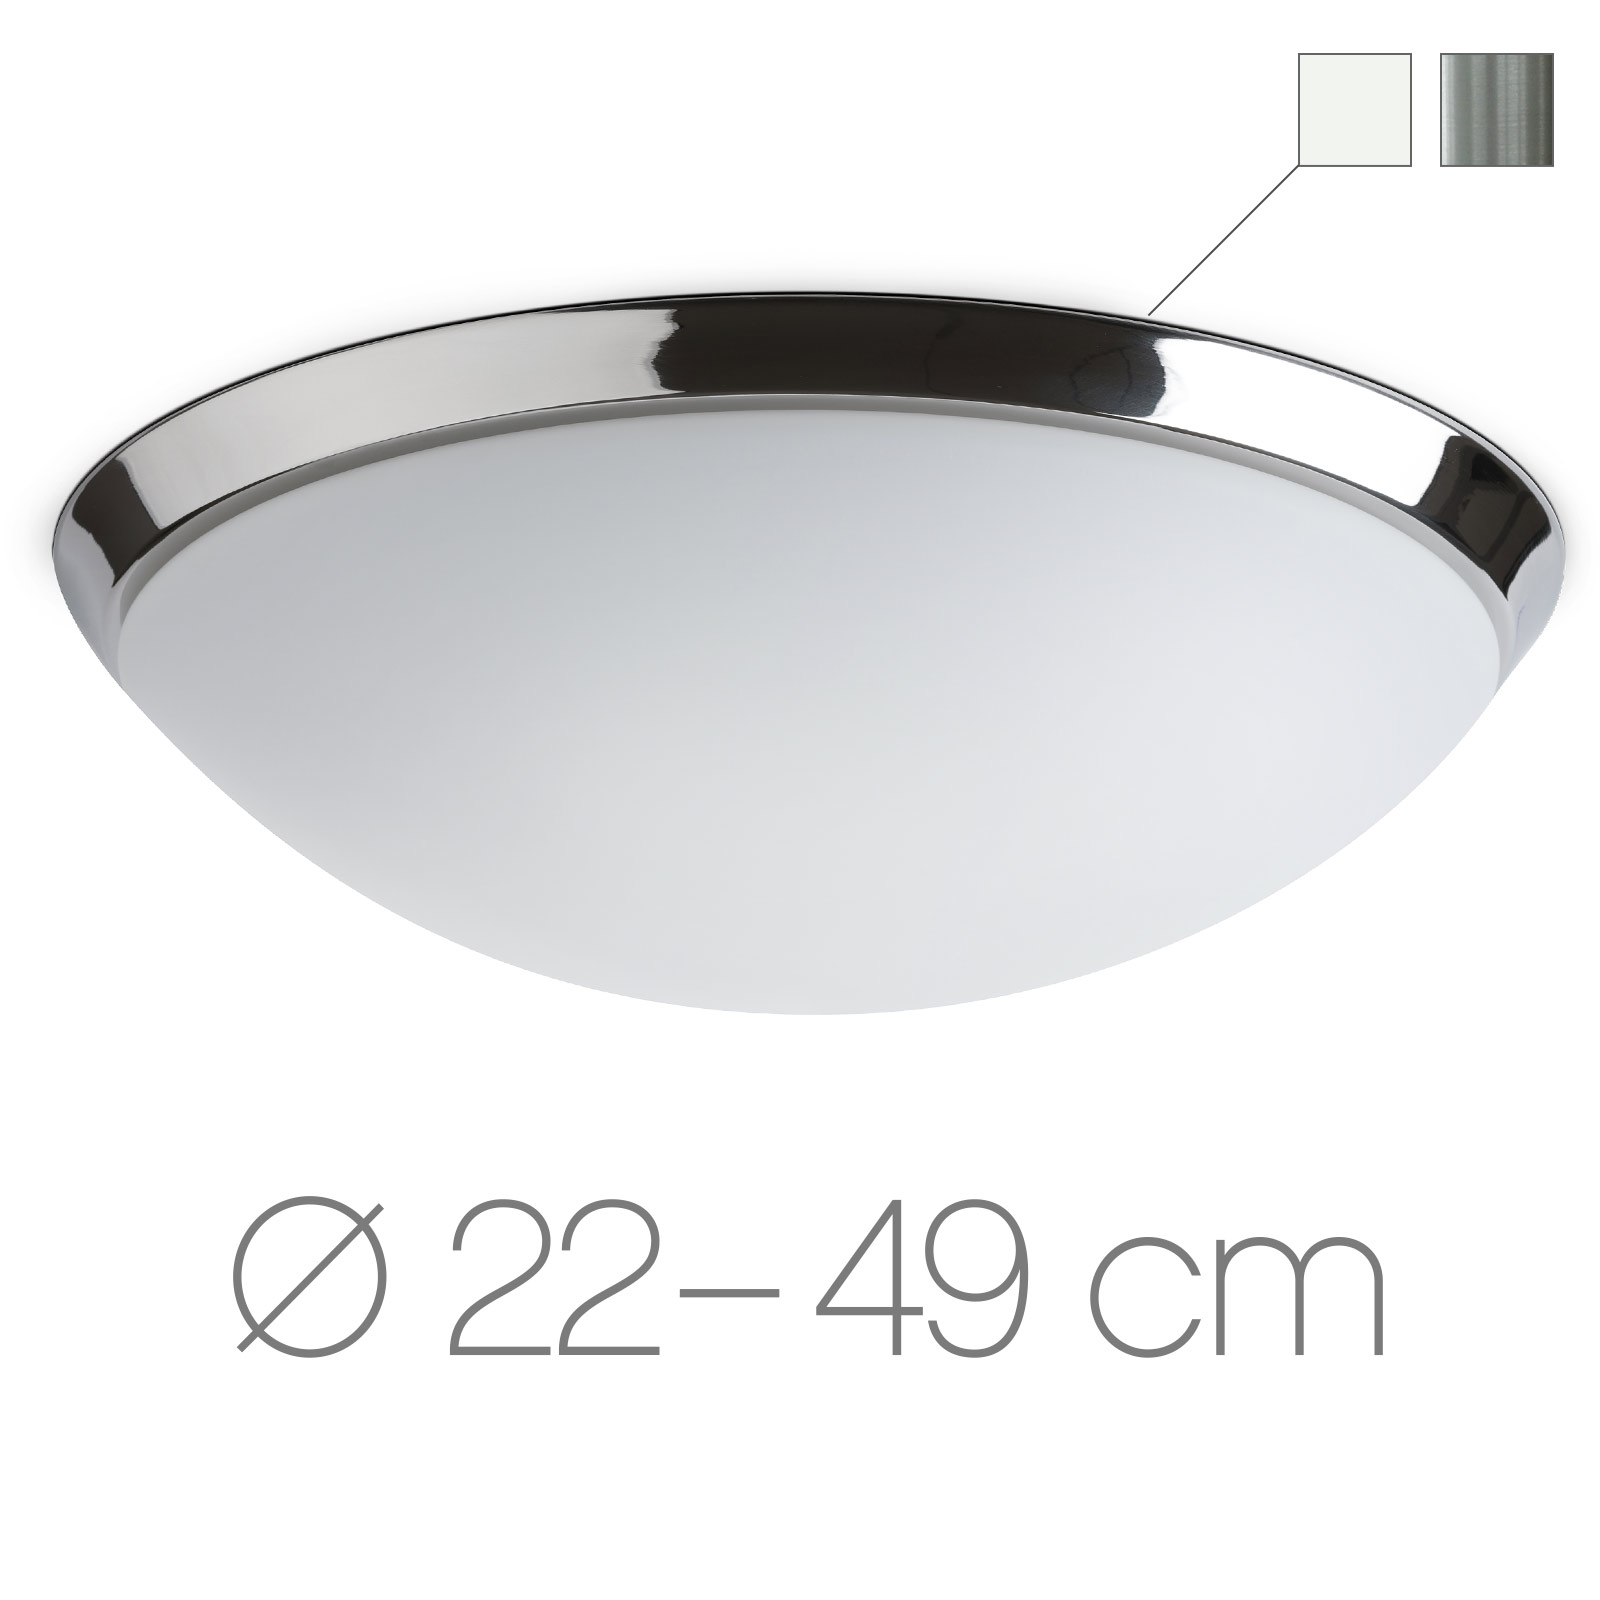 Opalglas-Deckenleuchte mit Zierring AURORA R1, Ø 22 bis 49 cm